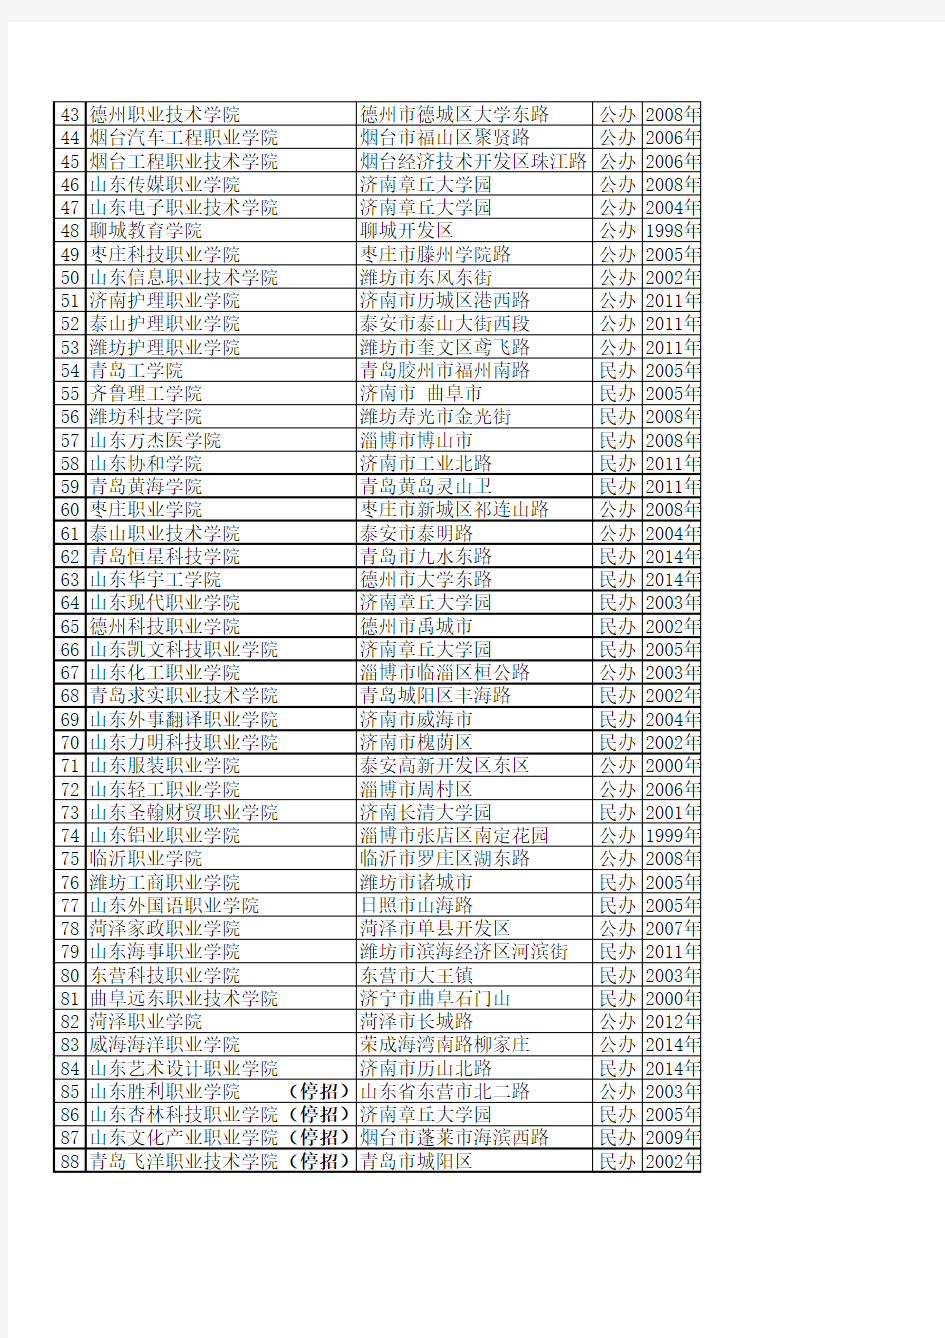 2014年山东高职院校排名情况表